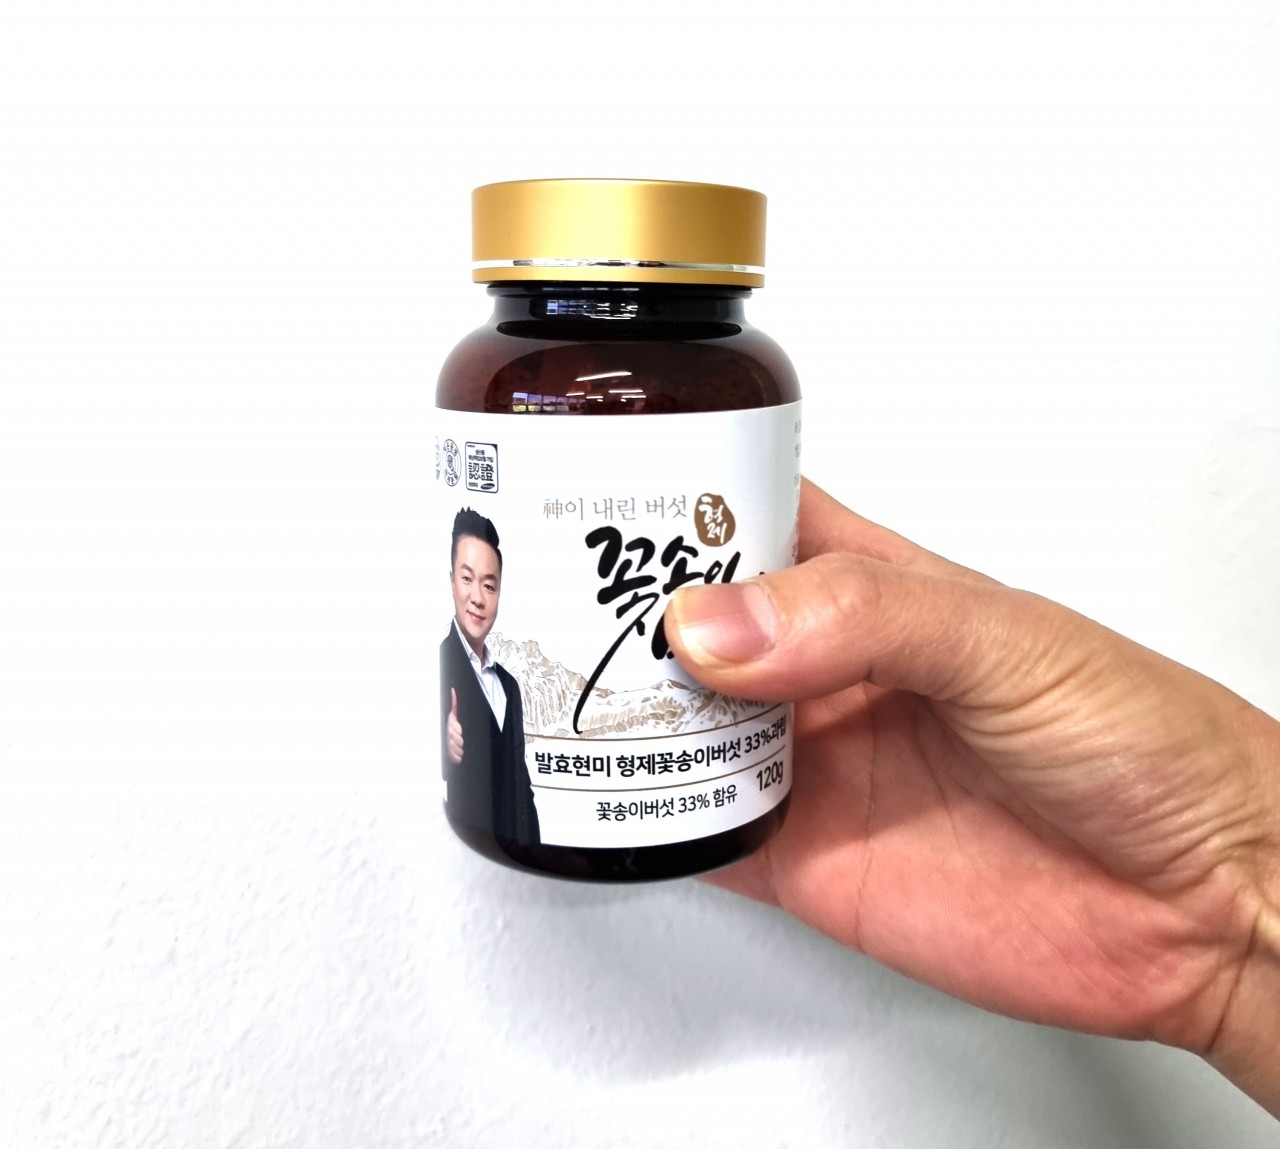 발효현미 형제꽃송이버섯 33%함유 과립120g 1개월분 구매시 62%할인